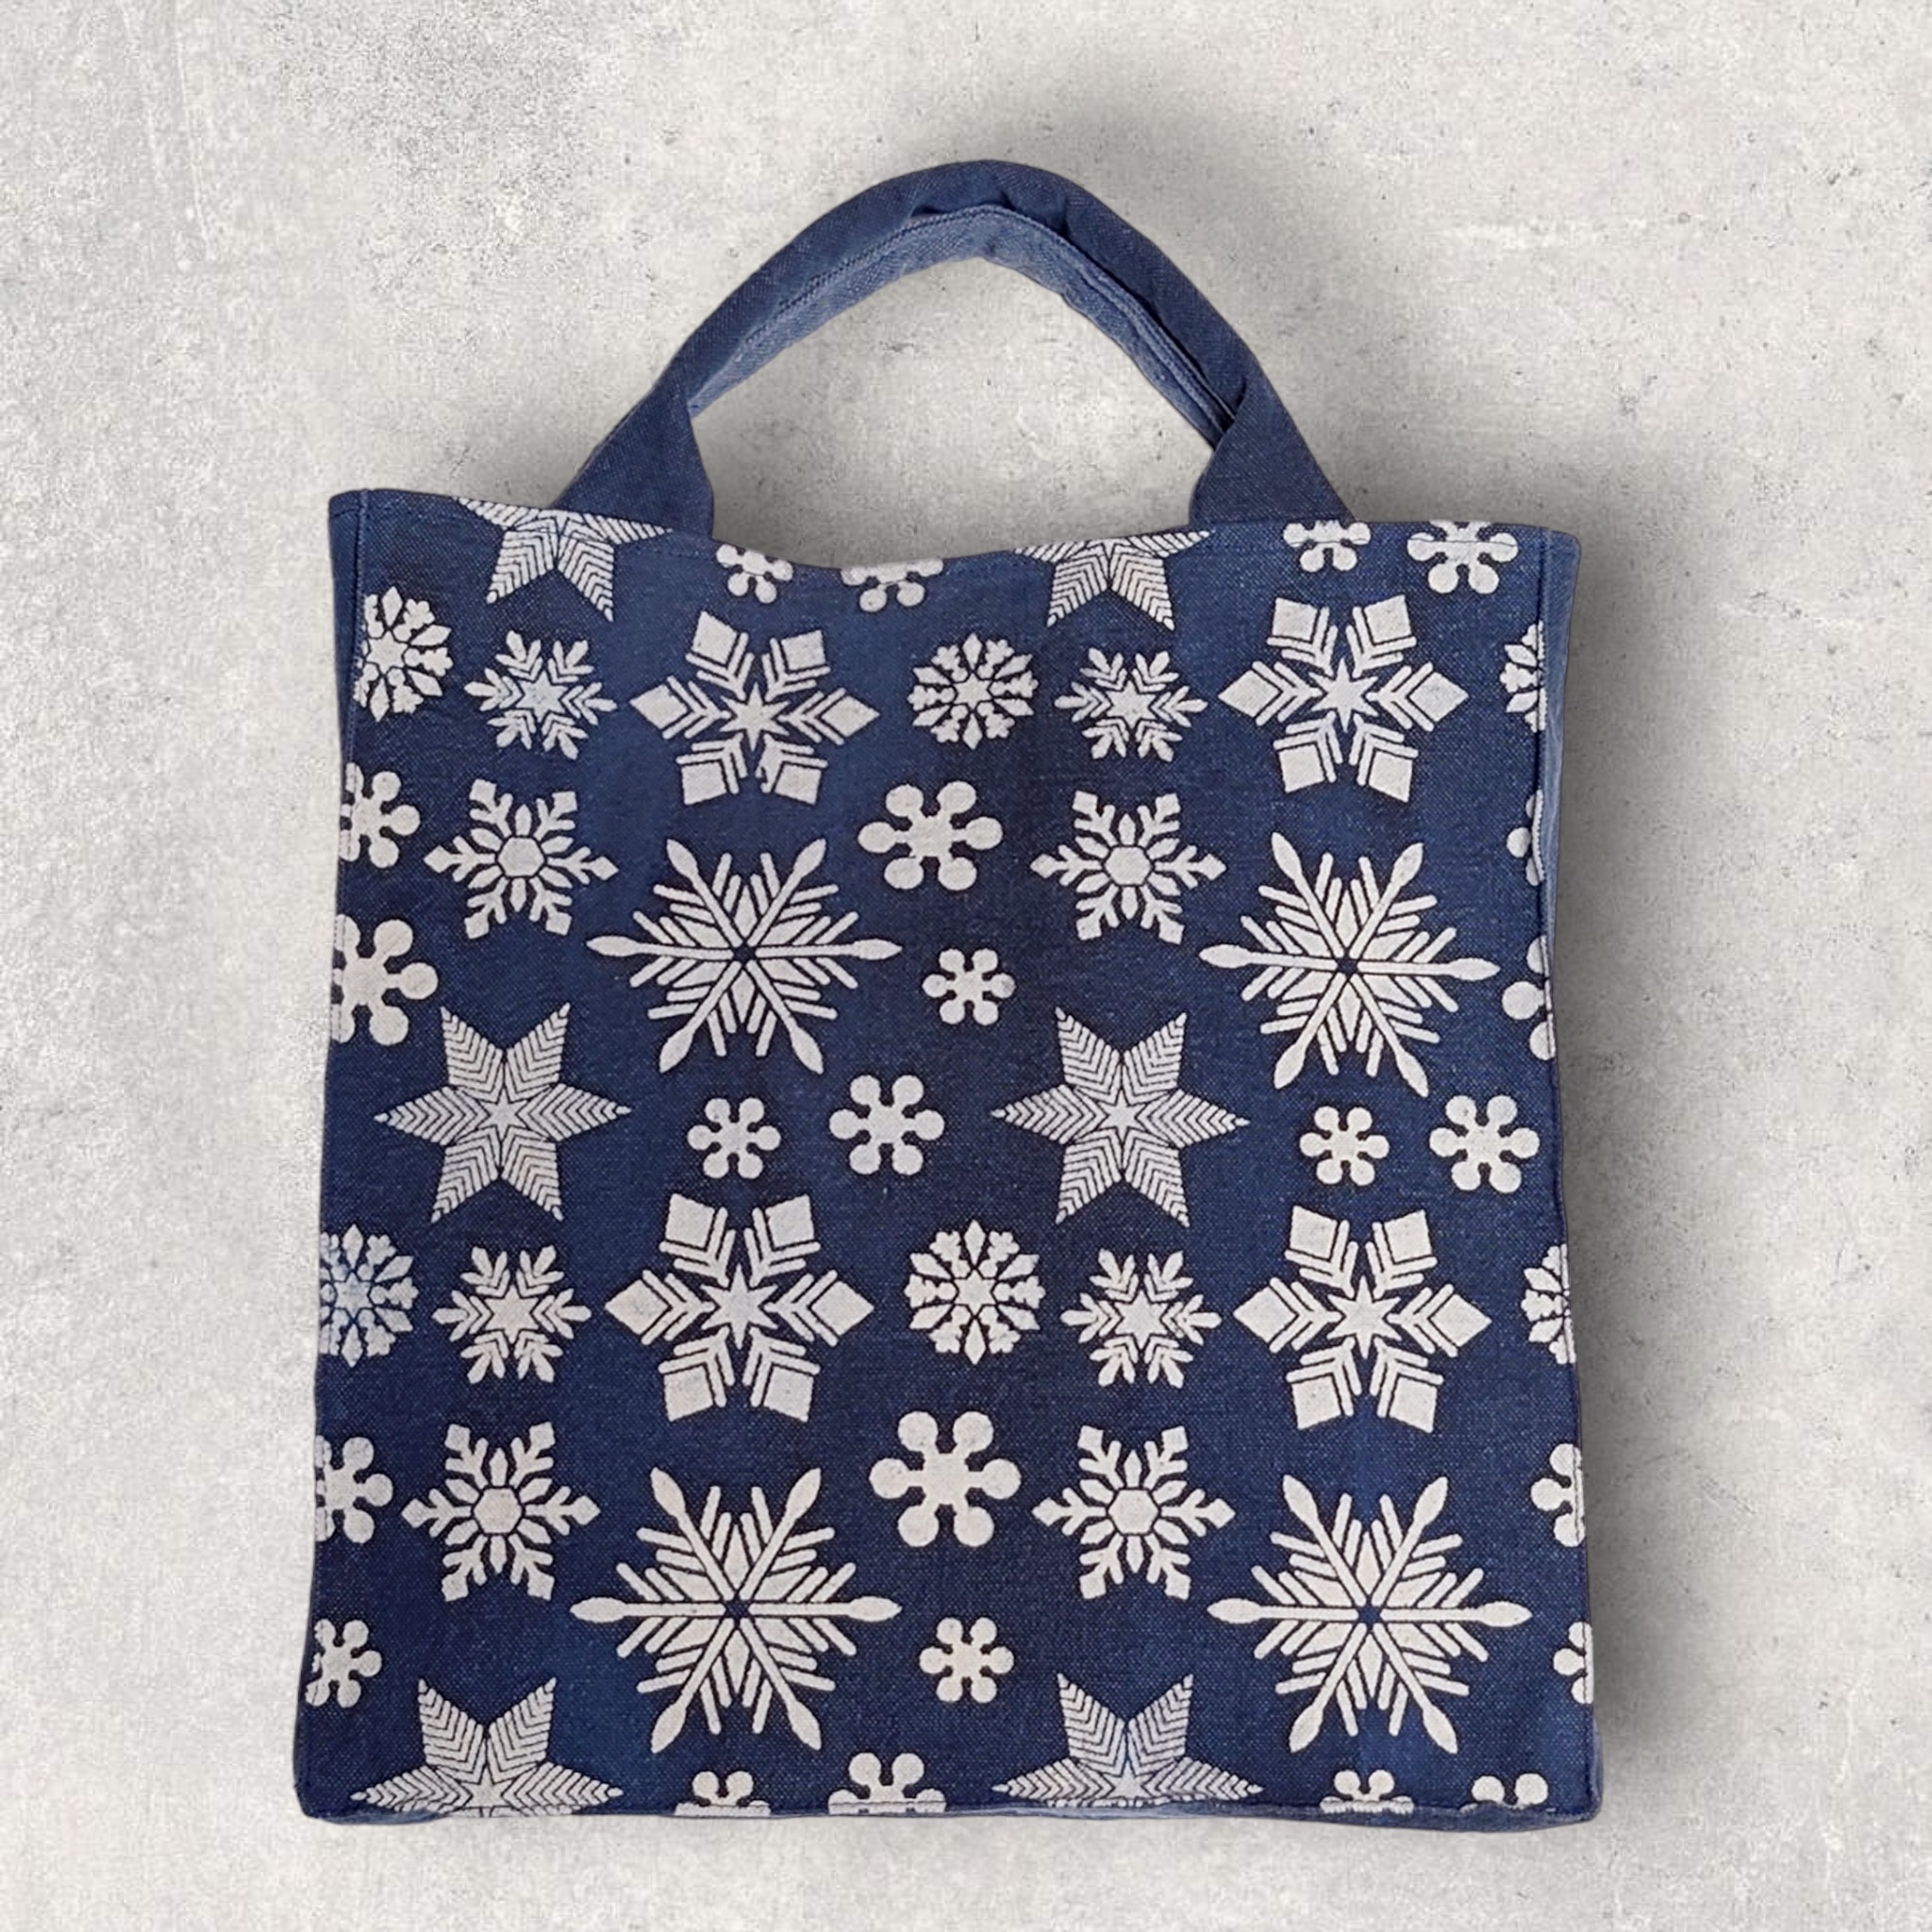 『リスマス ―― 冬の贈り物』展出品「雪の結晶バッグ」